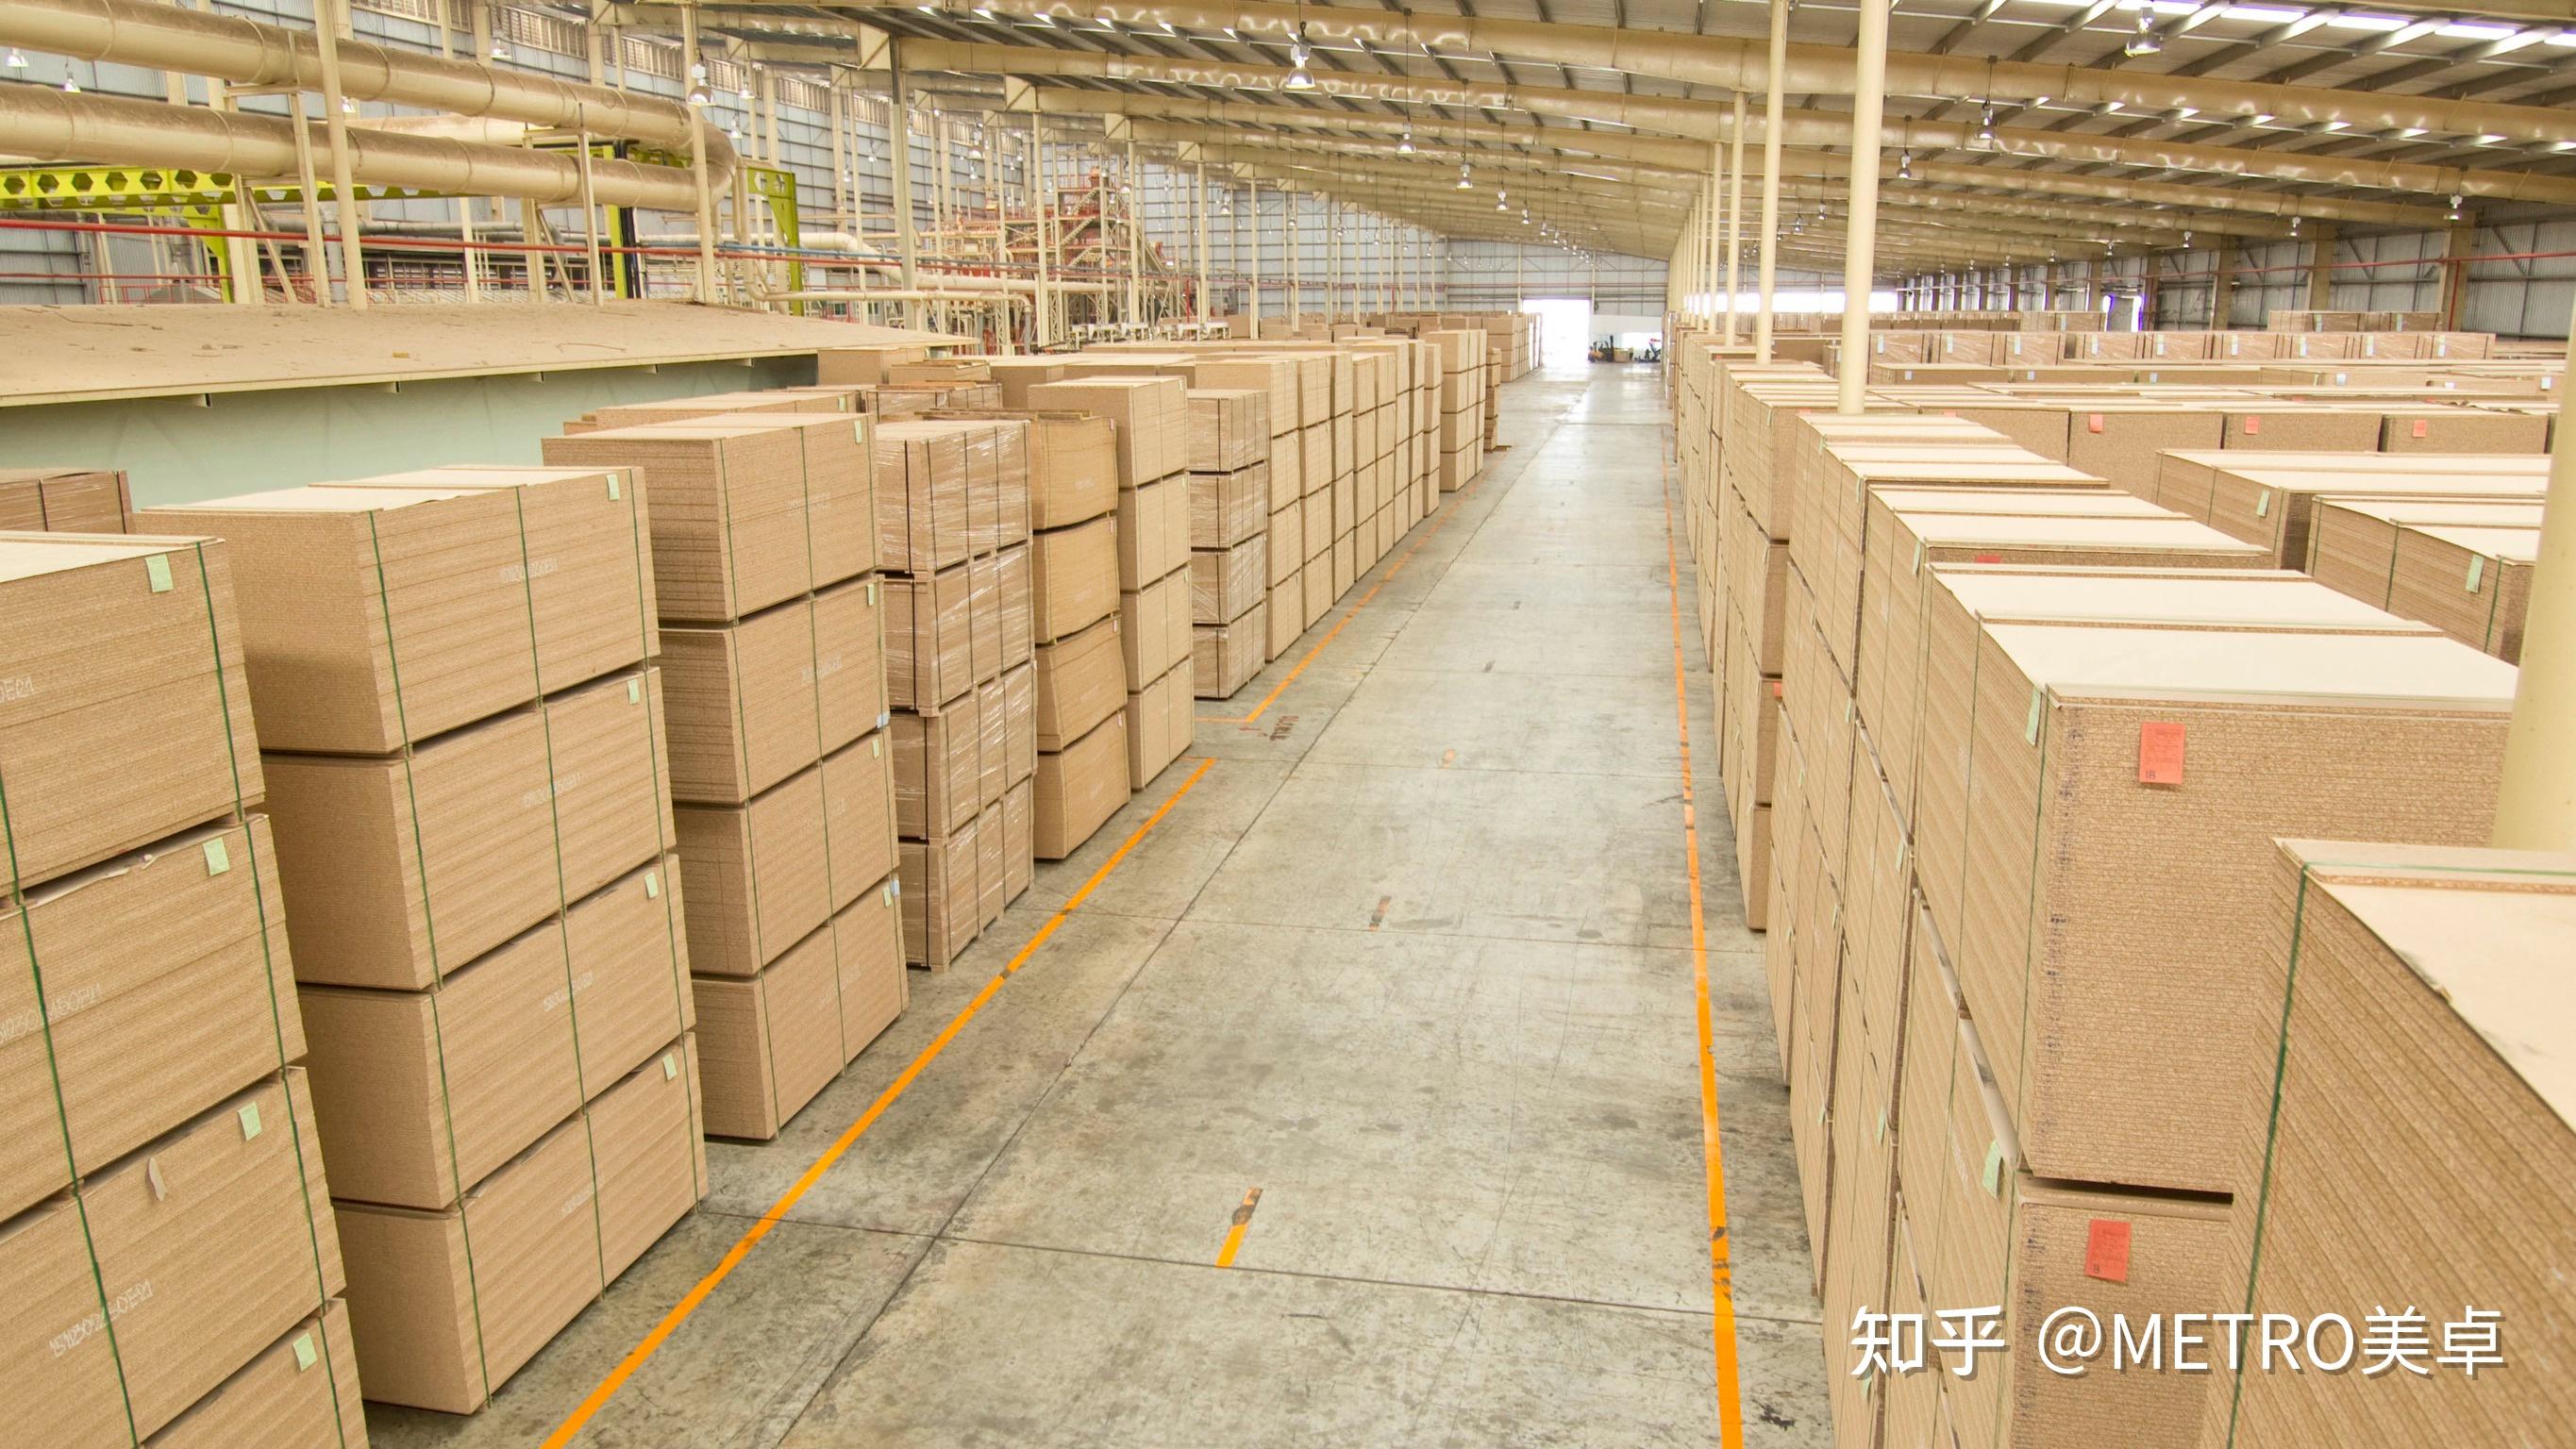 美卓集团,不仅仅是泰国一流的人造板生产企业,更是亚洲领先的板材制造